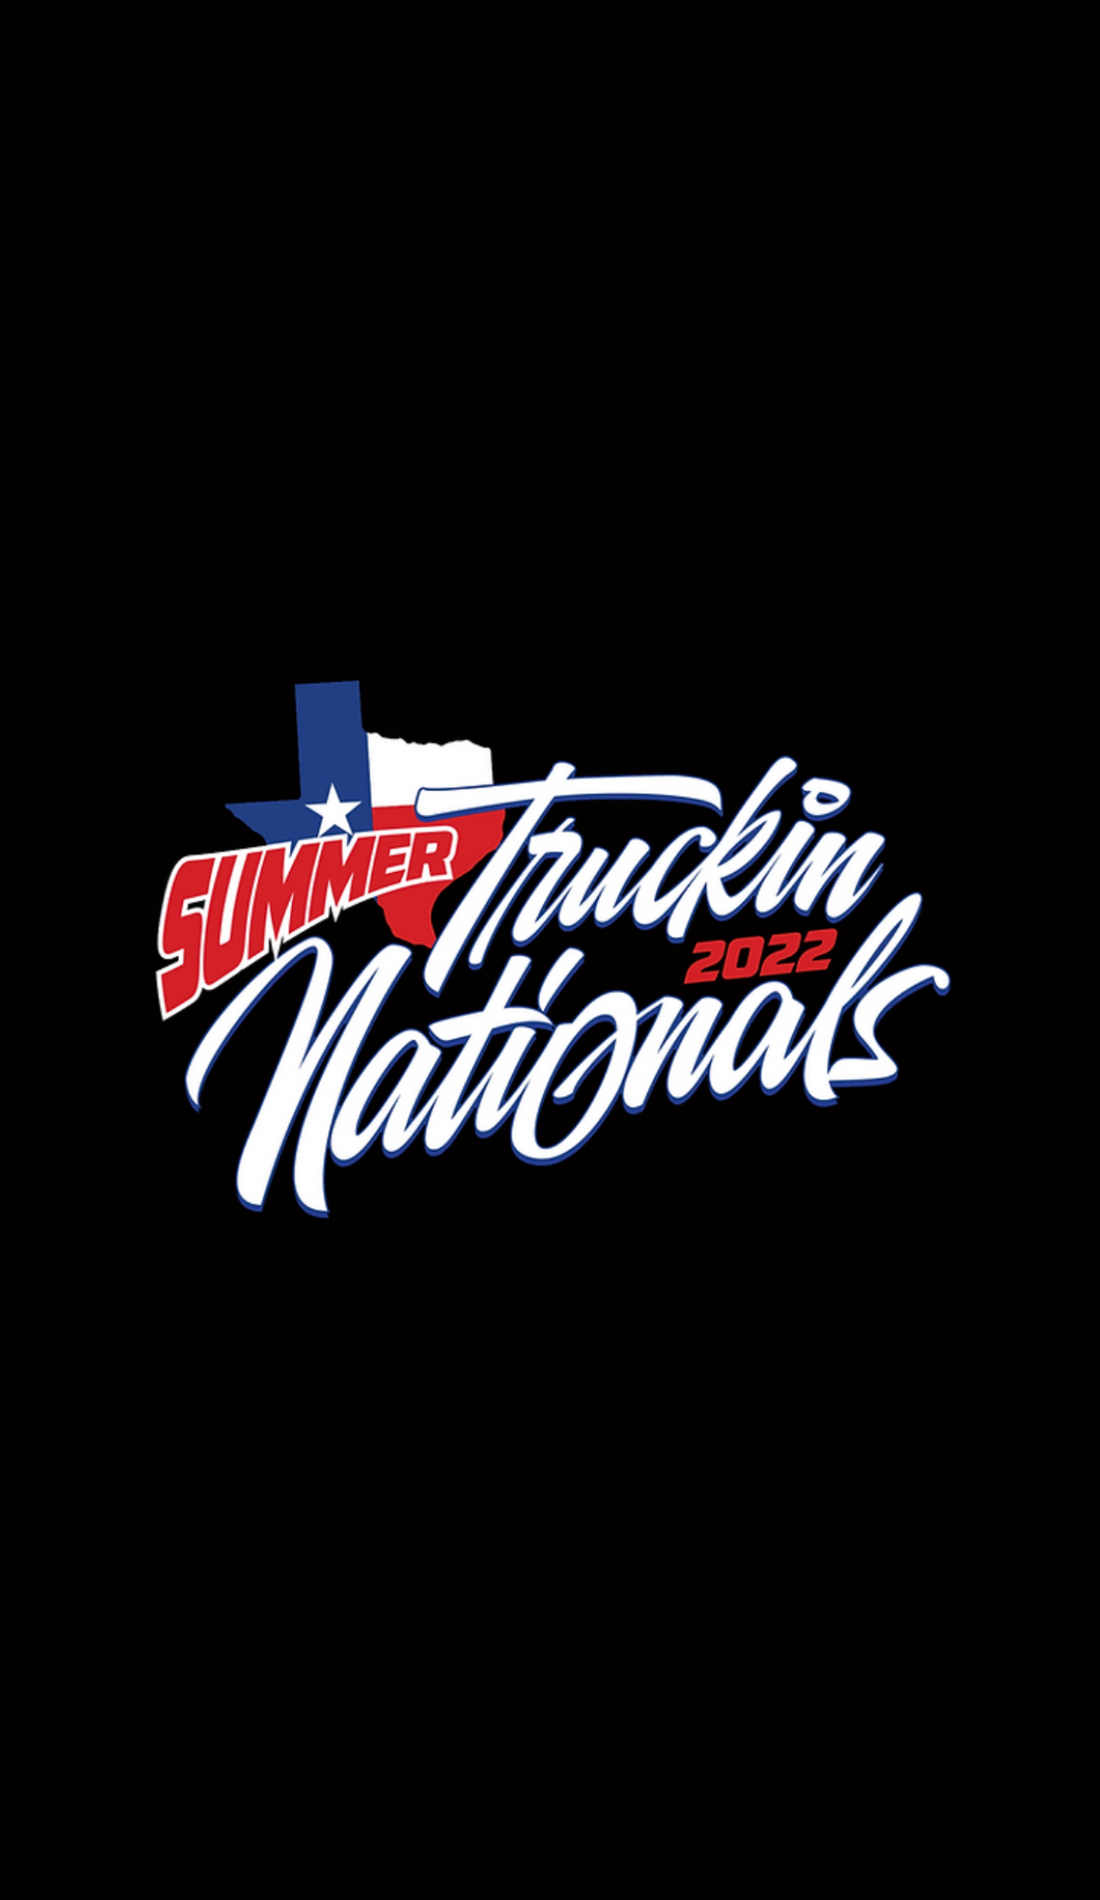 A Summer Truckin Nationals live event